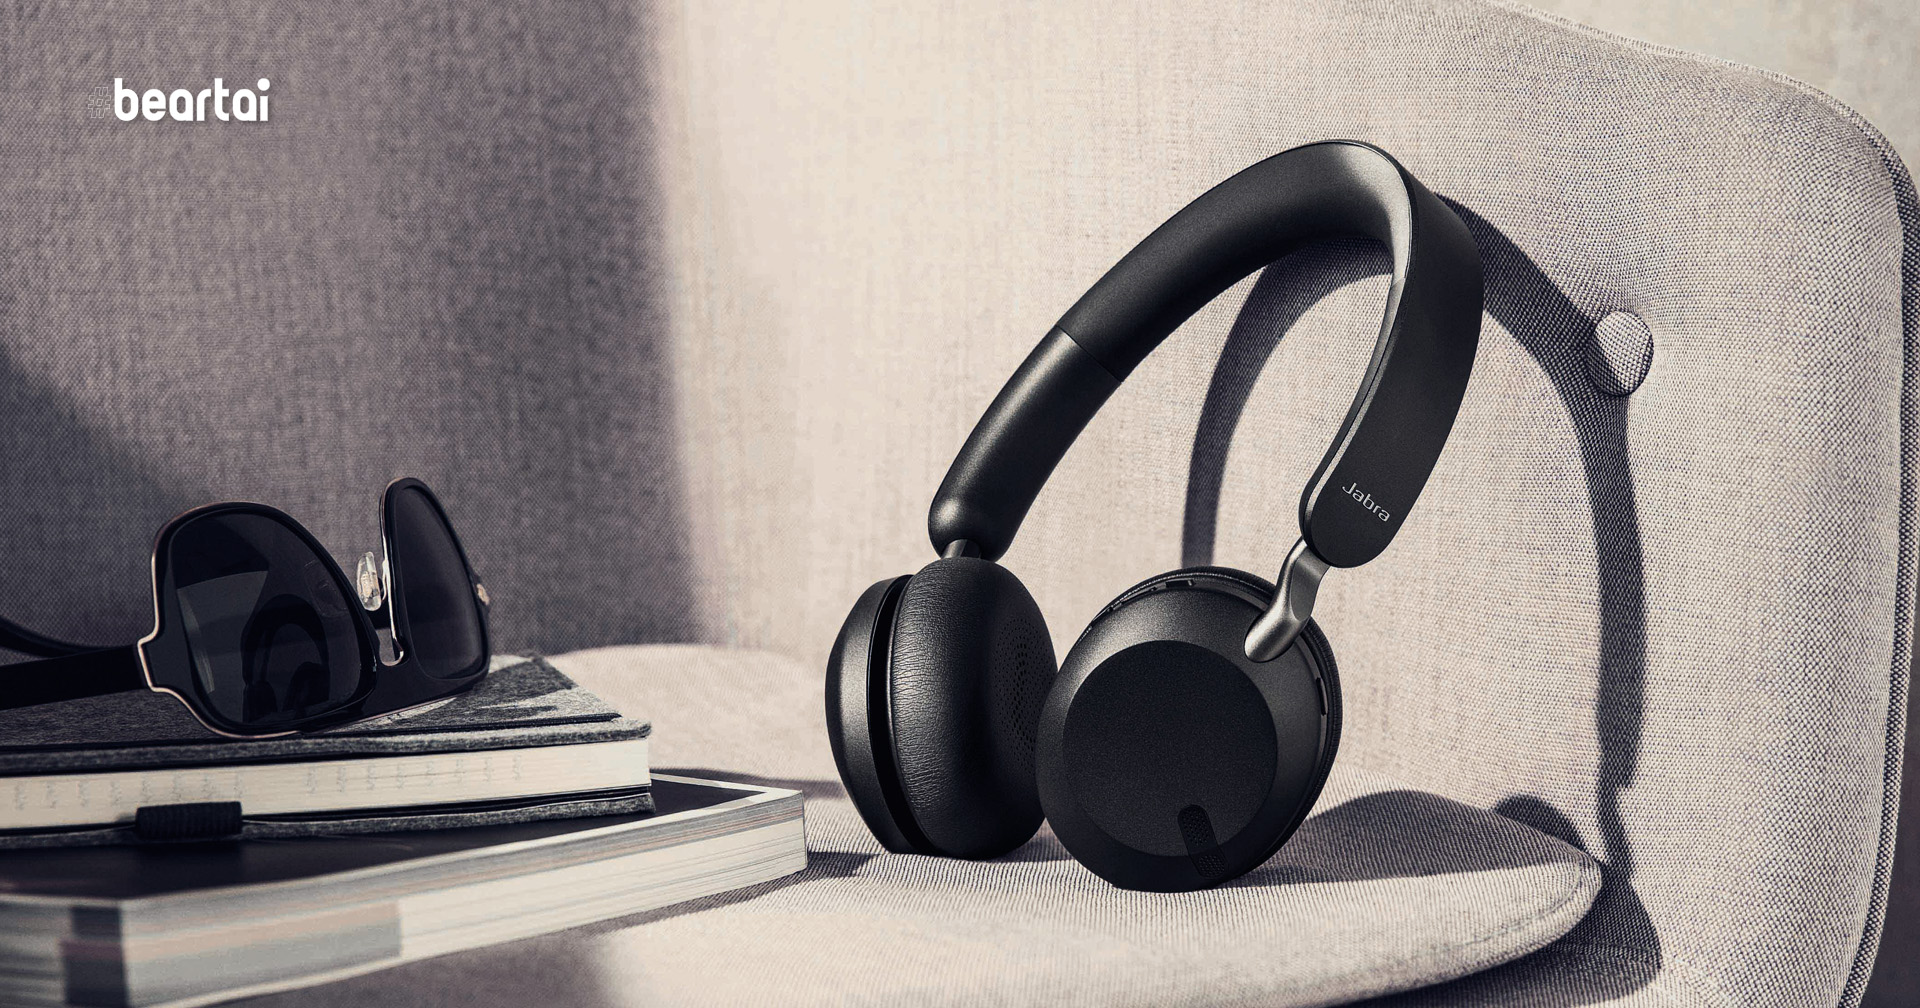 อาร์ทีบีฯ ส่งนวัตกรรมหูฟังรุ่นล่าสุด Jabra Elite 45h ที่มาพร้อมเทคโนโลยี My Sound รุ่นแรกของตระกูลบุกตลาด